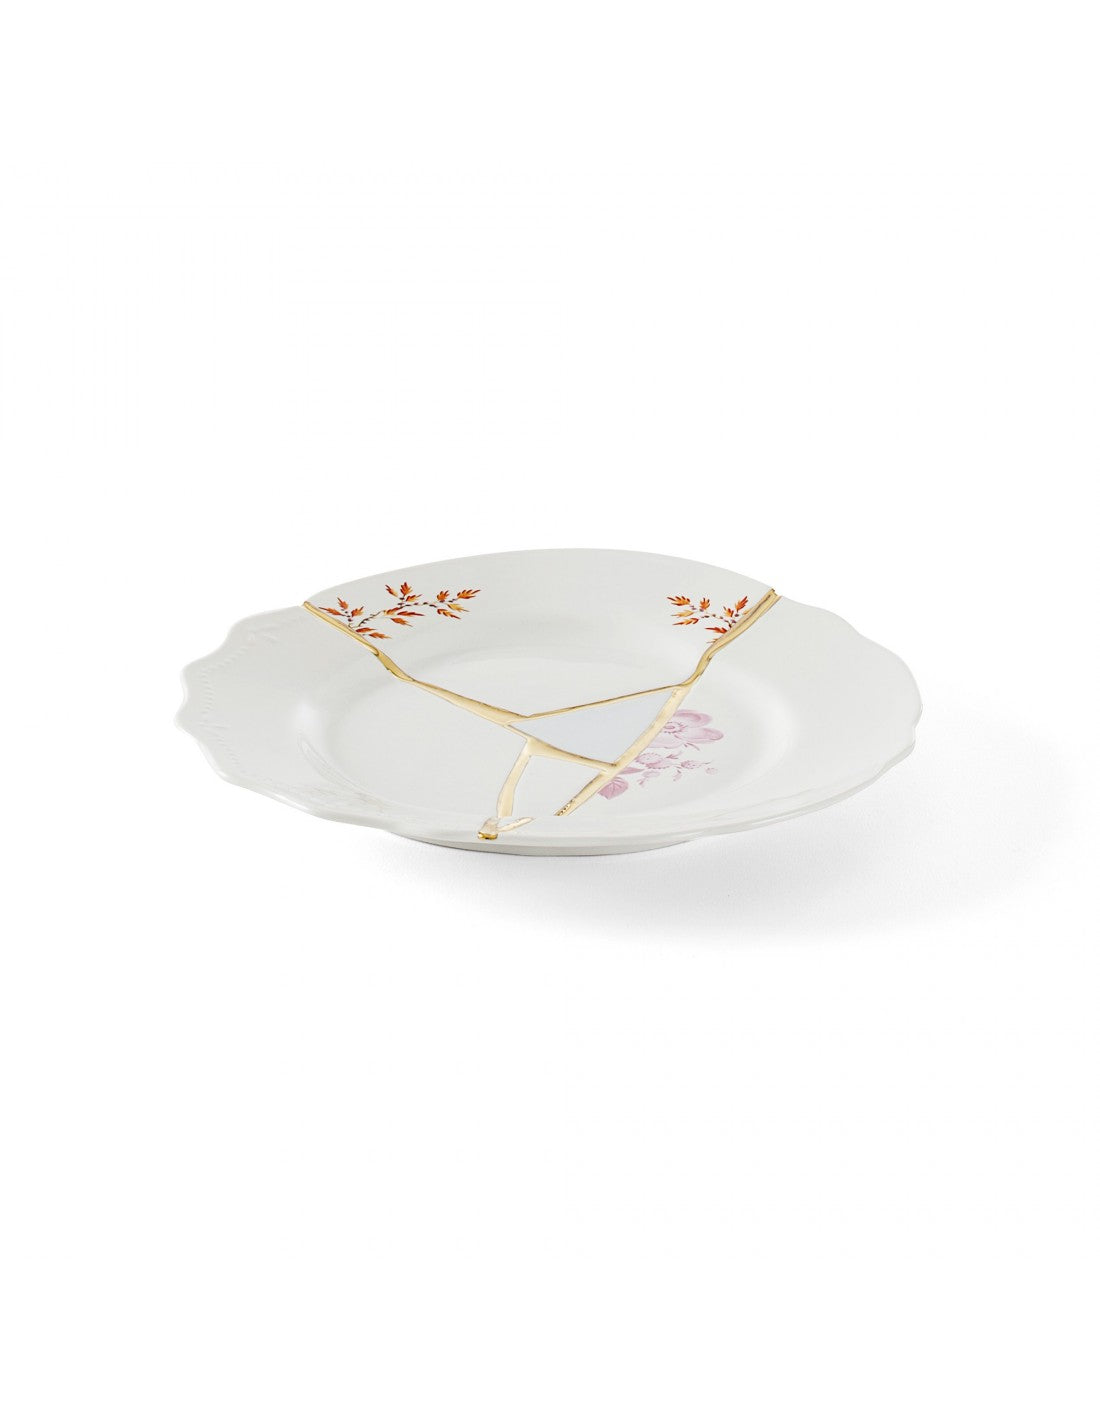 SELETTI Kintsugi Porcelain dessert plate n'1" - pack of 2